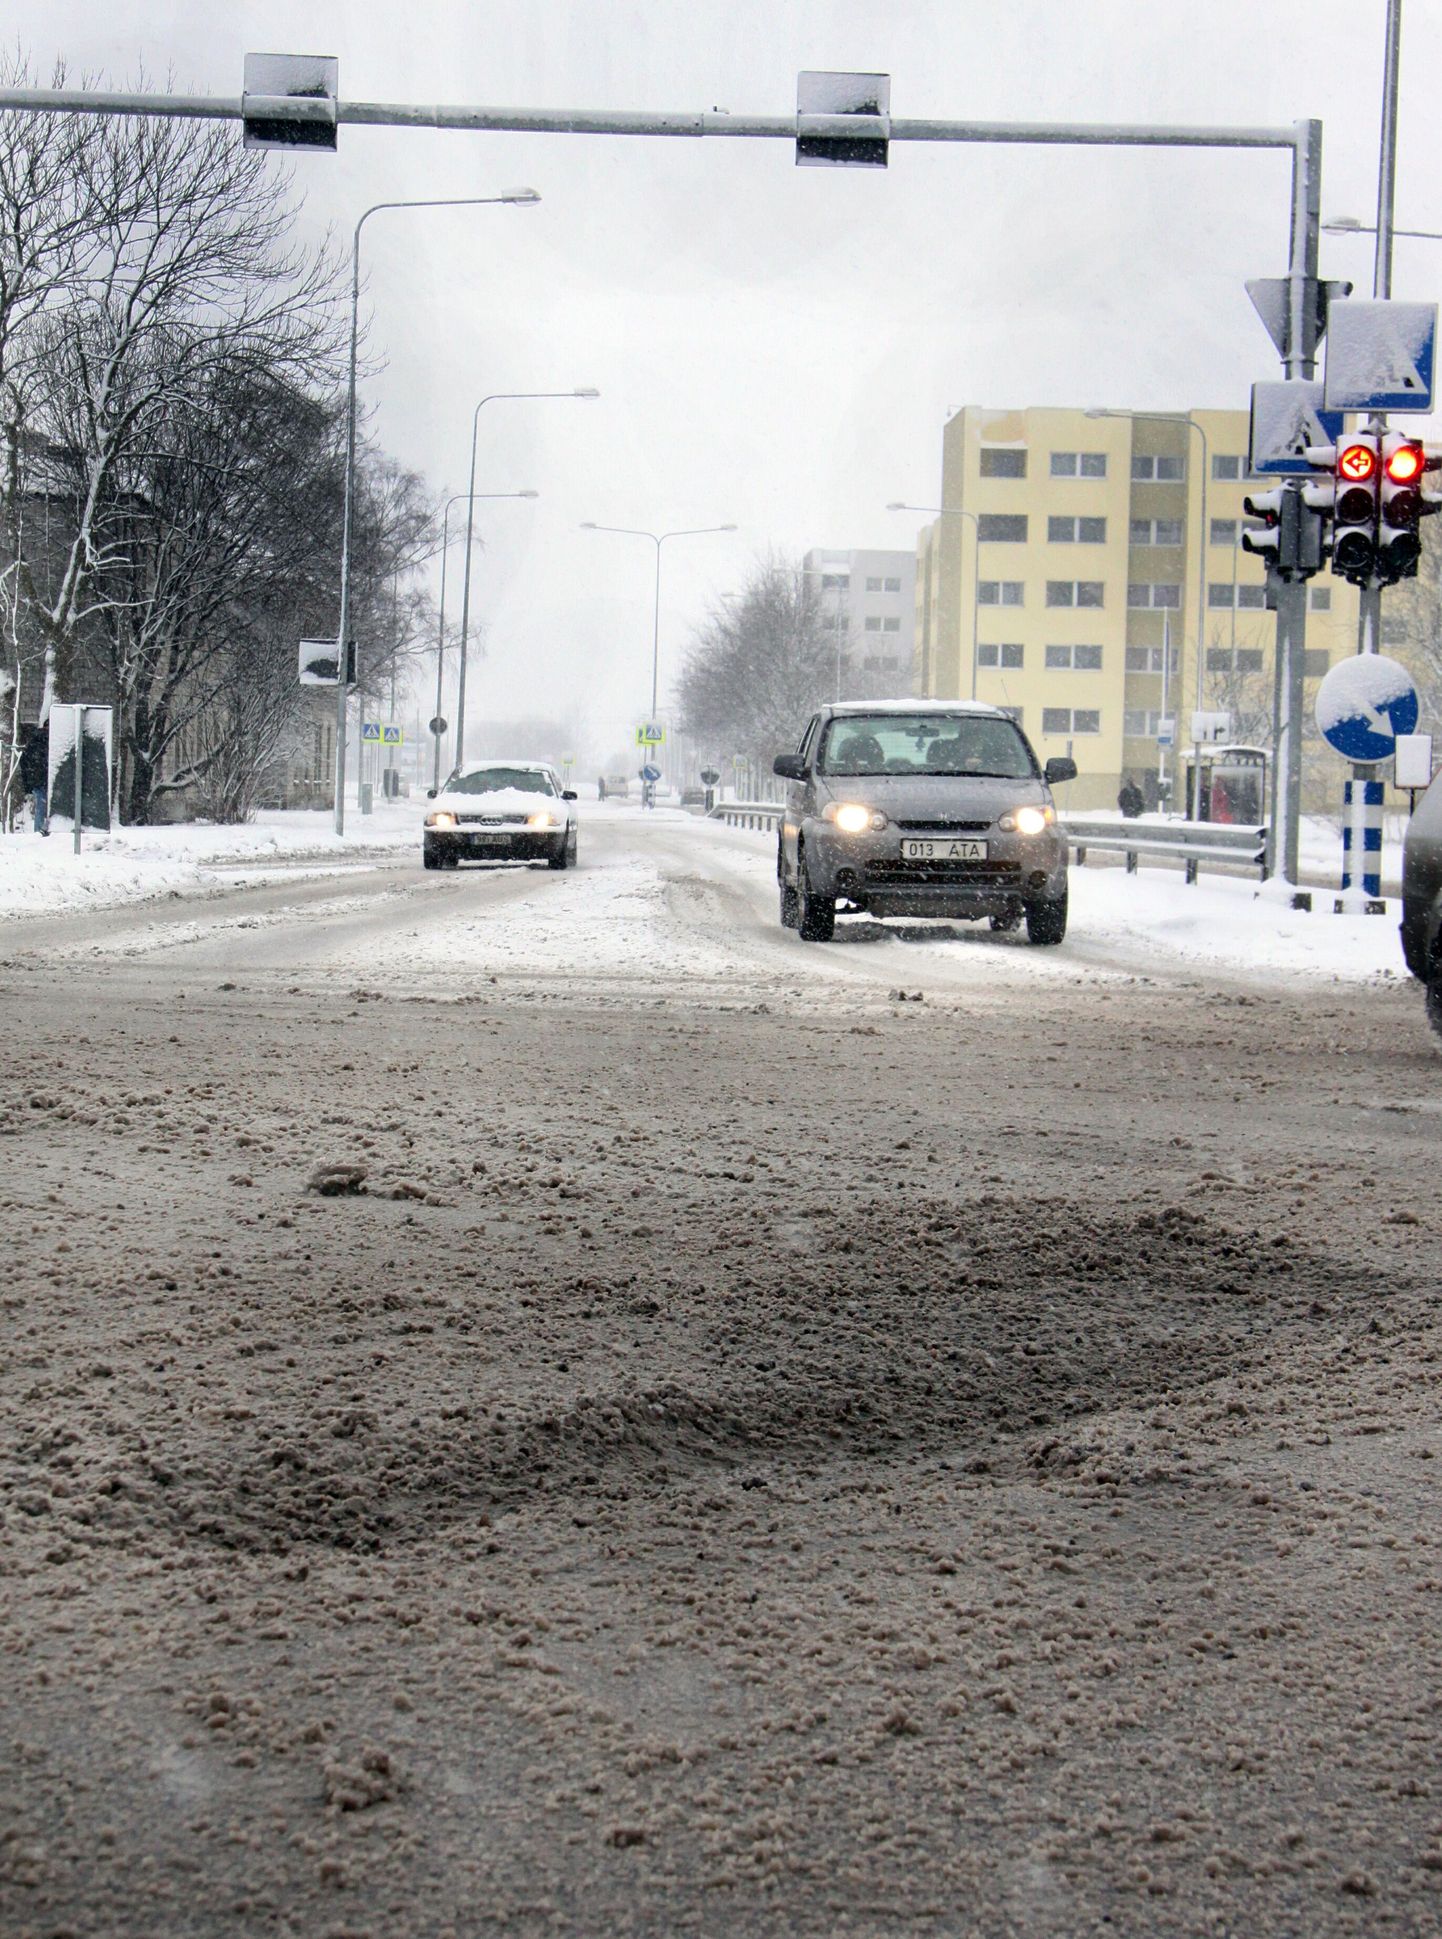 Pärnu kurikuusaim löökauk asub Riia maantee ja Papiniidu tänava ristmikul.